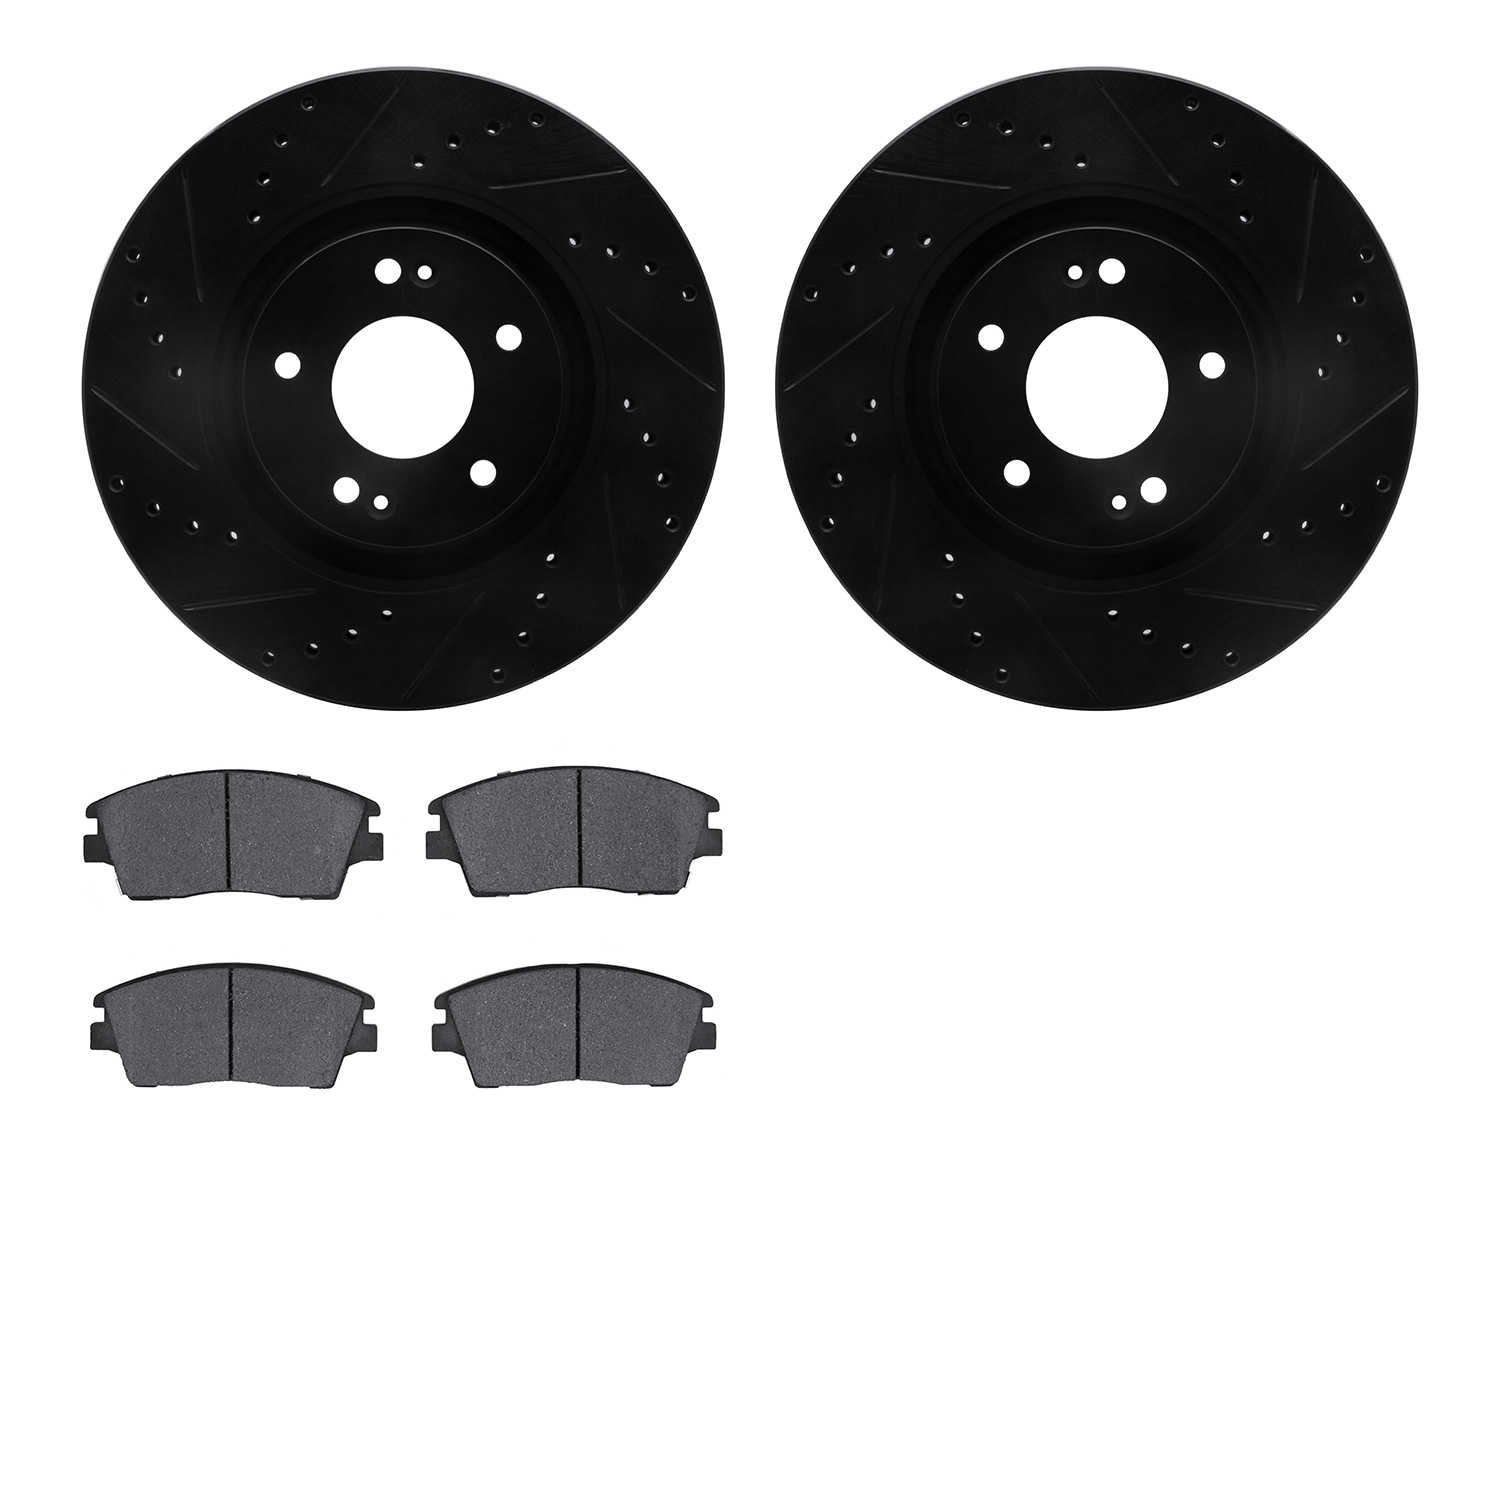 8302-03092 Drilled/Slotted Brake Rotors with 3000-Series Ceramic Brake Pads Kit [Black], Fits Select Kia/Hyundai/Genesis, Positi